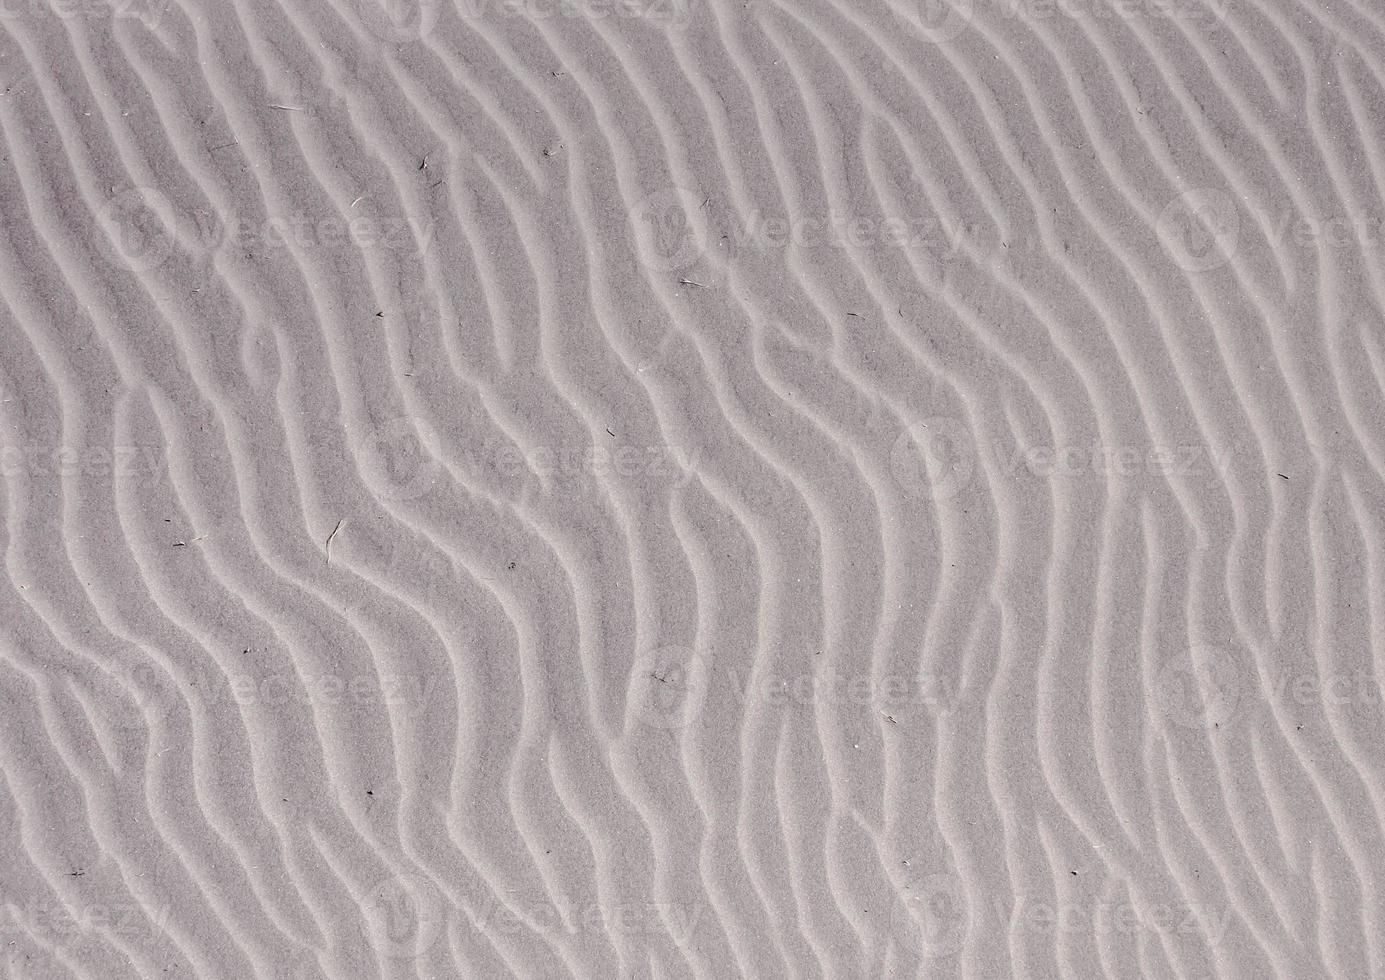 Sand in der Wüste foto